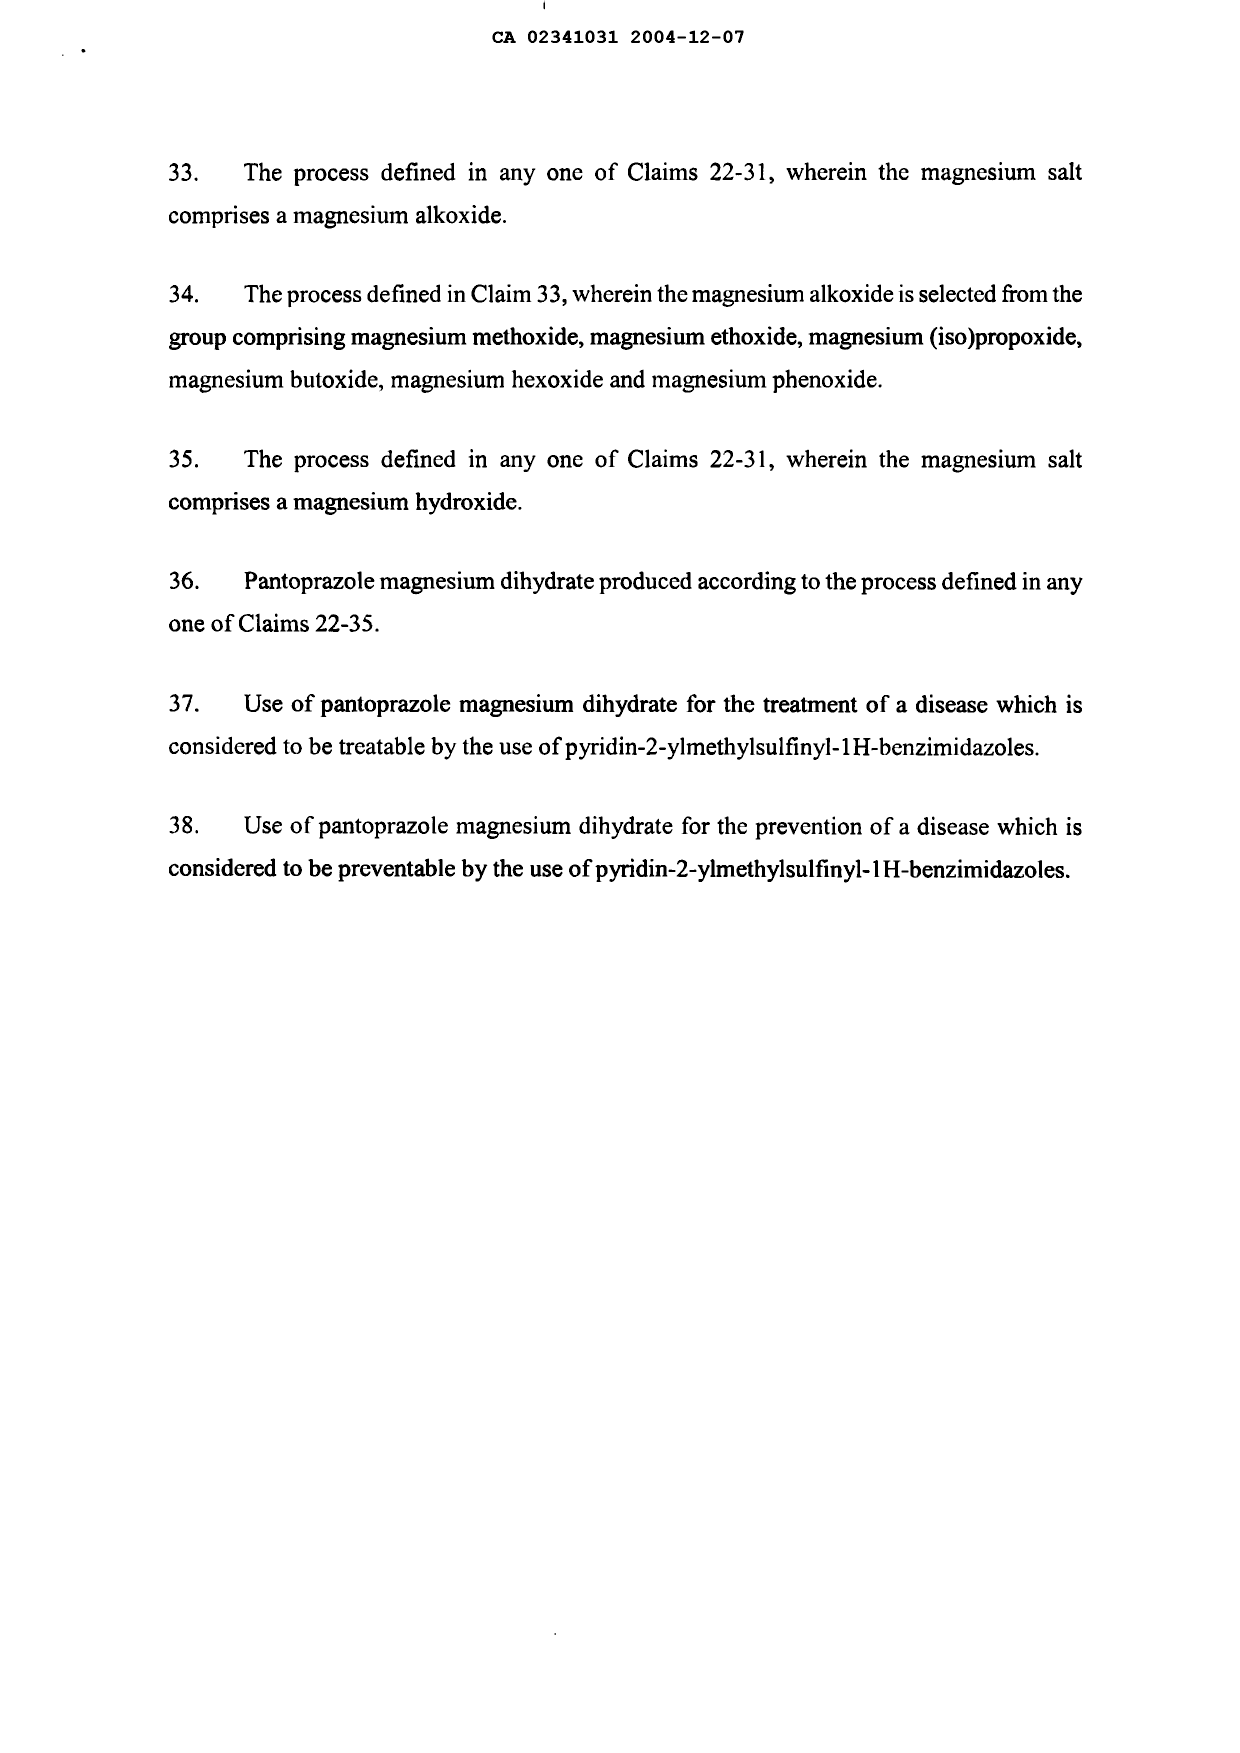 Document de brevet canadien 2341031. Revendications 20031207. Image 4 de 4